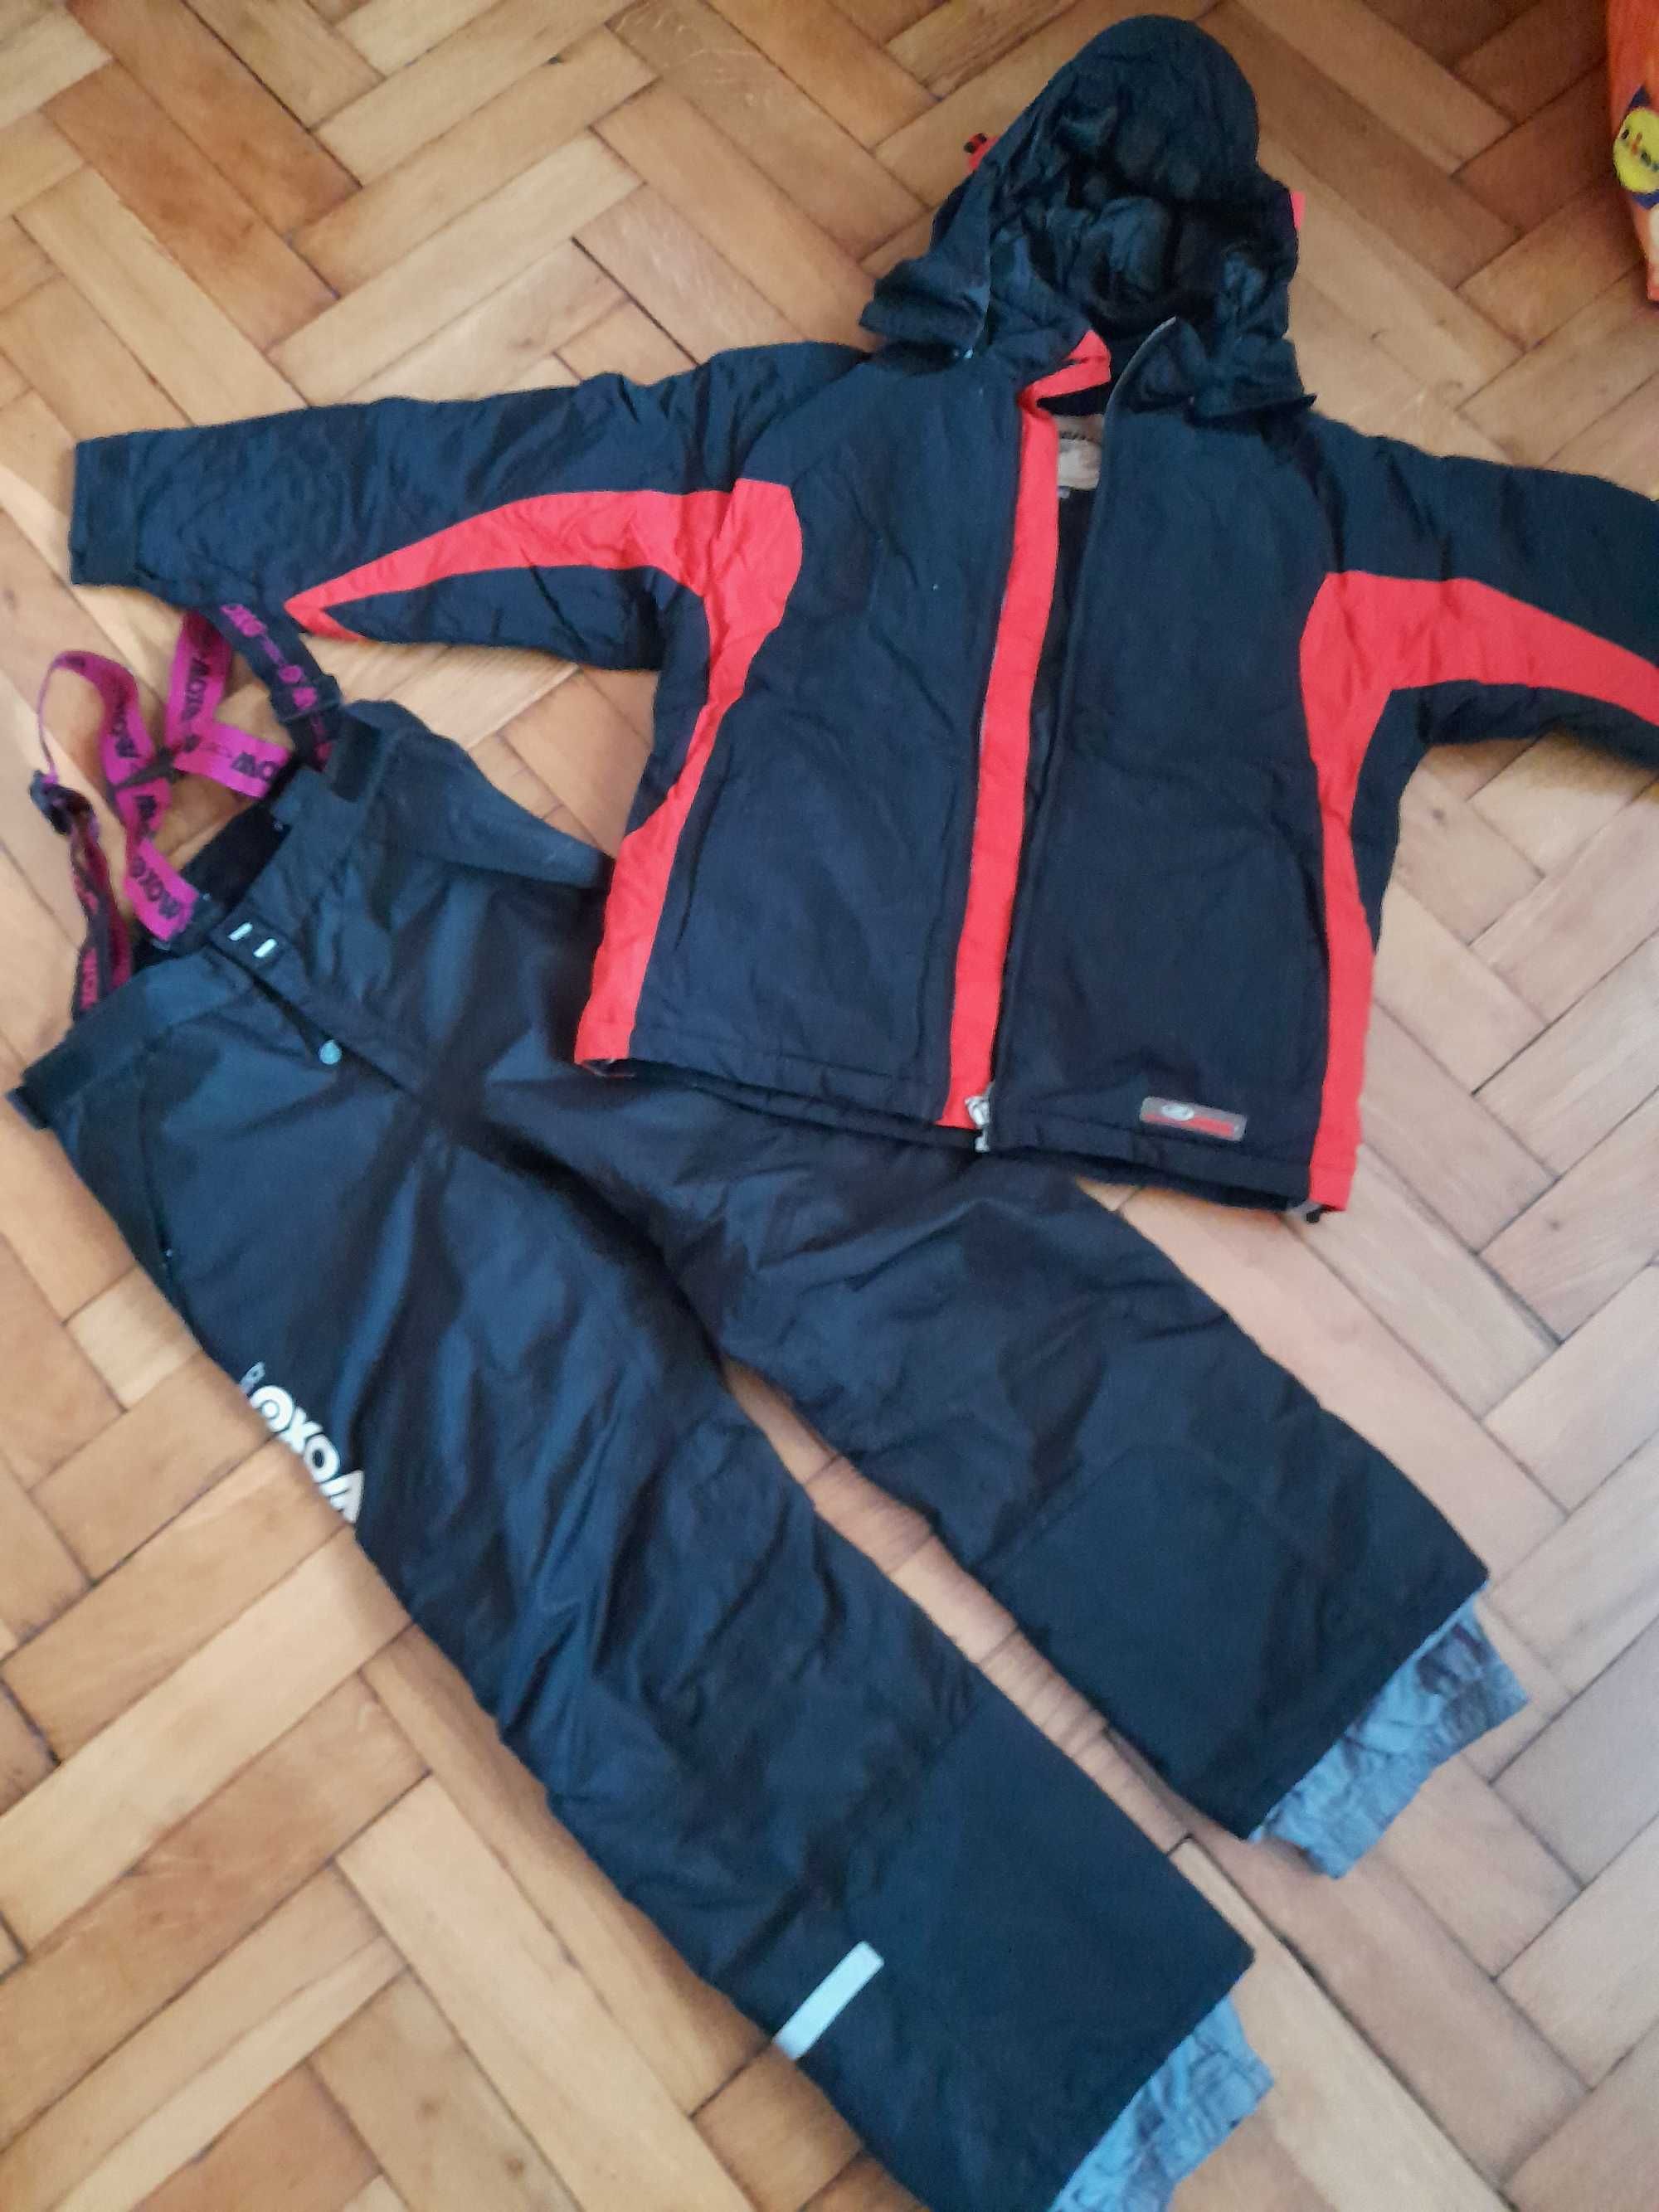 kurtka narciarska ZIENER 140, spodnie termoaktywne Woxo/ nienoszone